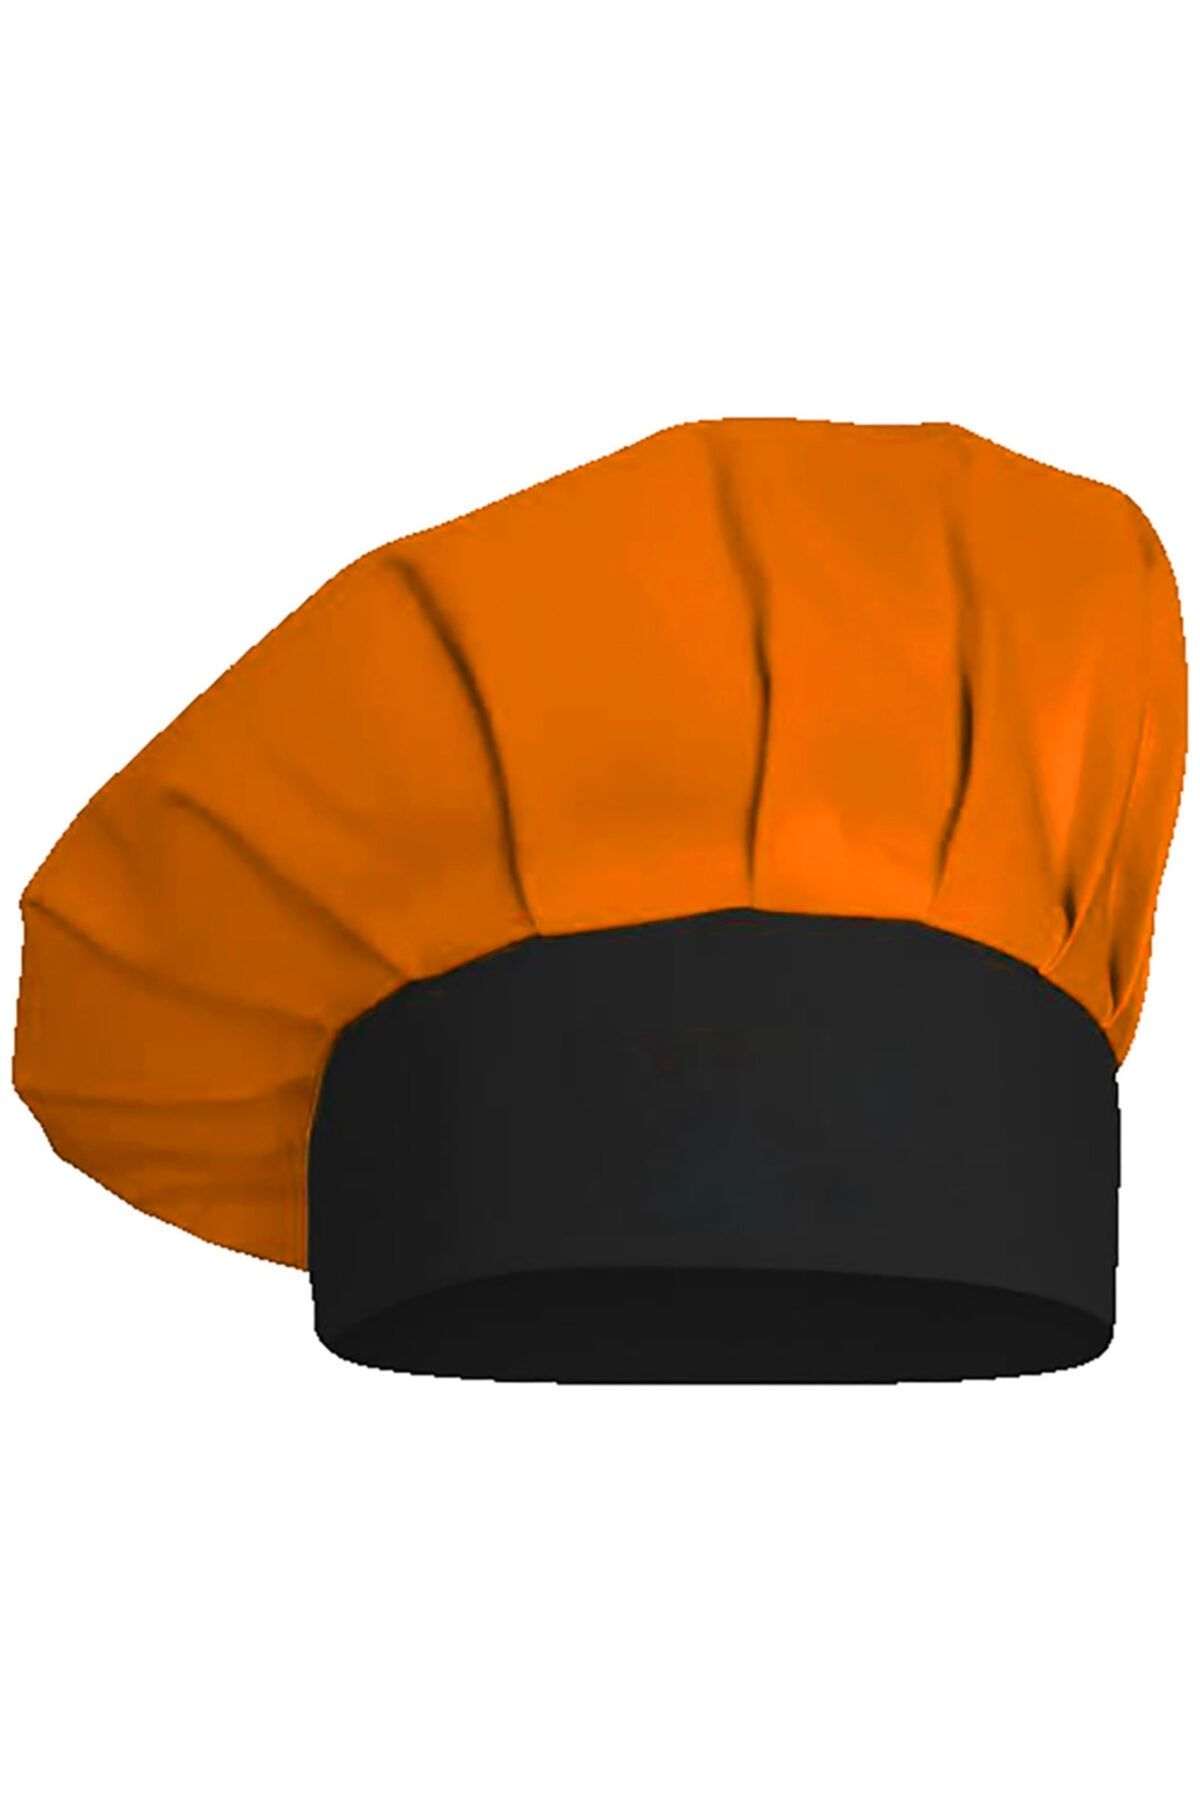 medusaforma Turuncu Siyah Aşçı Şapkası Mutfak Şef Mantar Kep